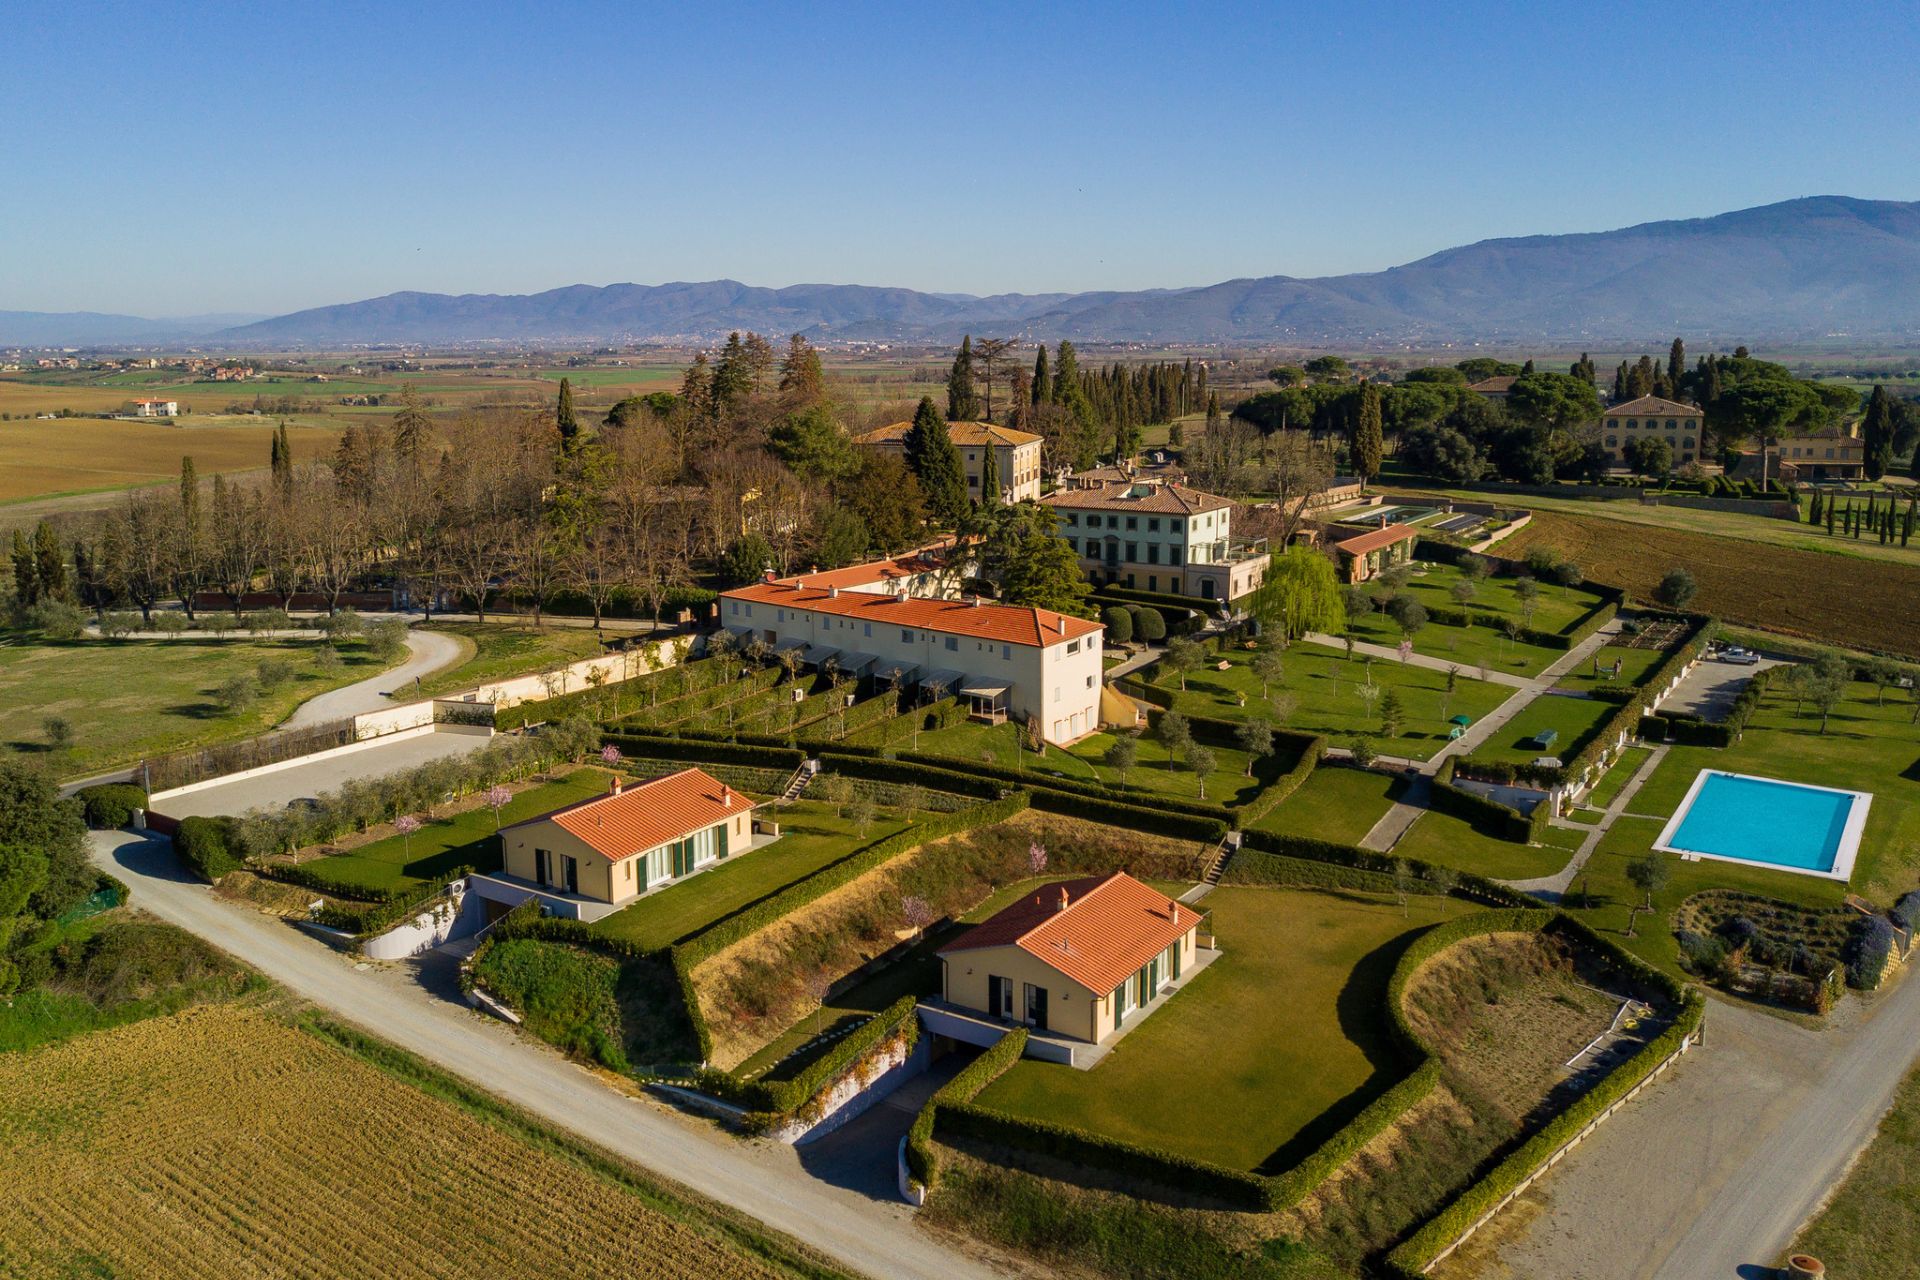 Residenze Borgo Syrah: esclusive dimore tra le colline e i vigneti di Cortona